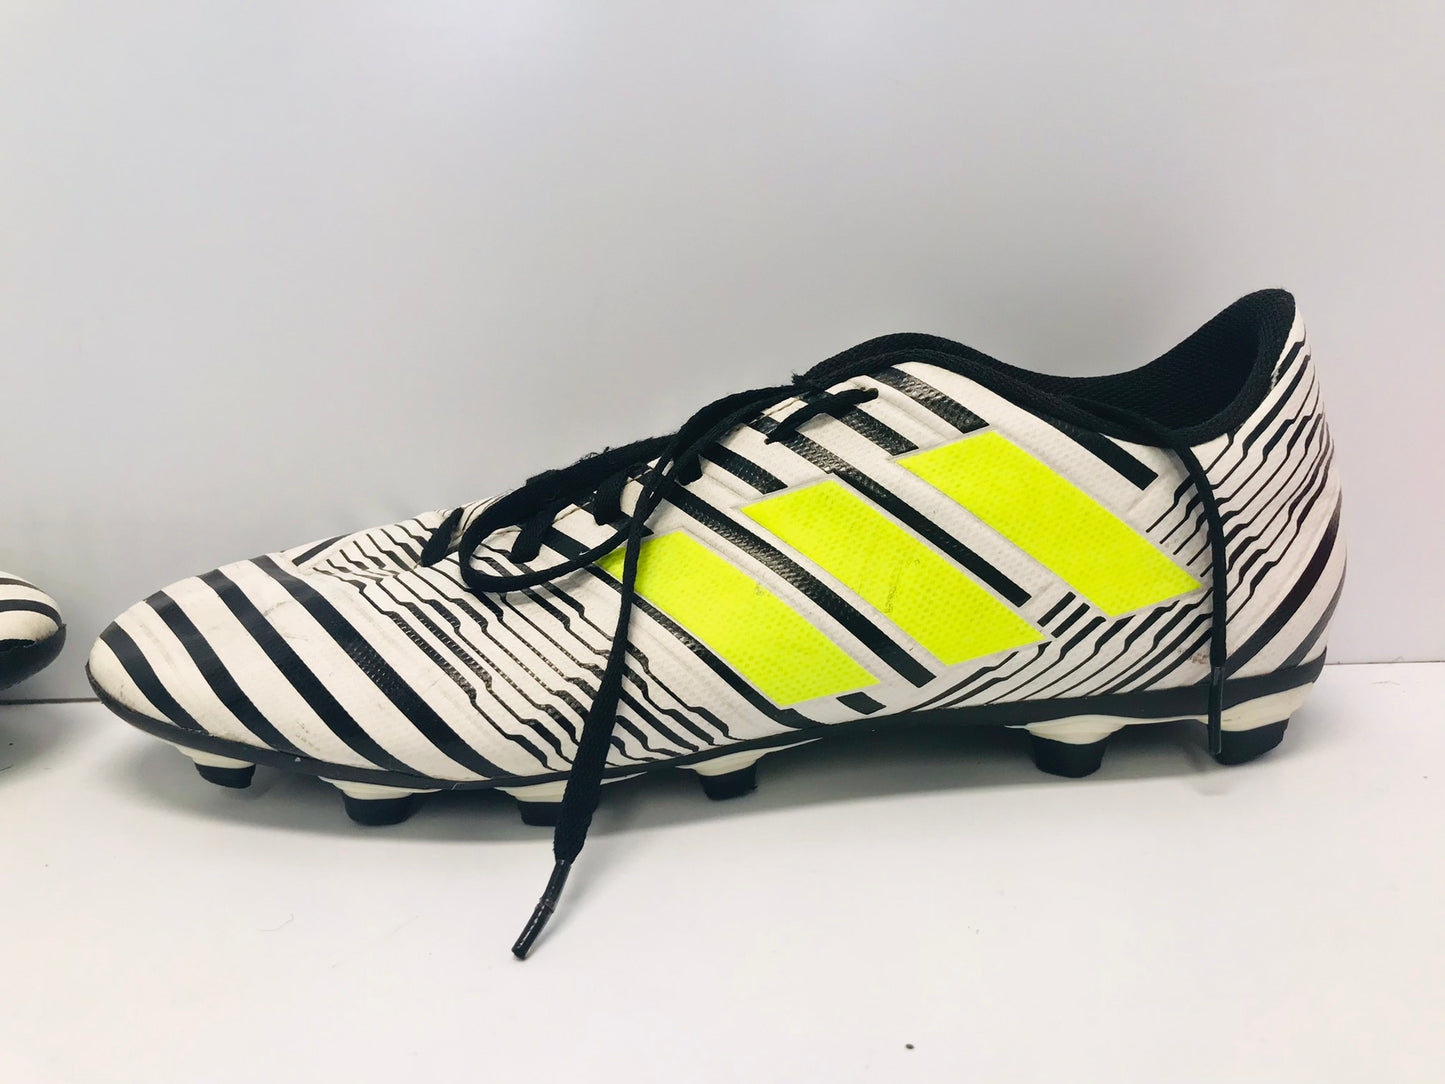 Soccer Shoes Cleats Men's Size 12 Adidas Nemeziz  Black White Lime